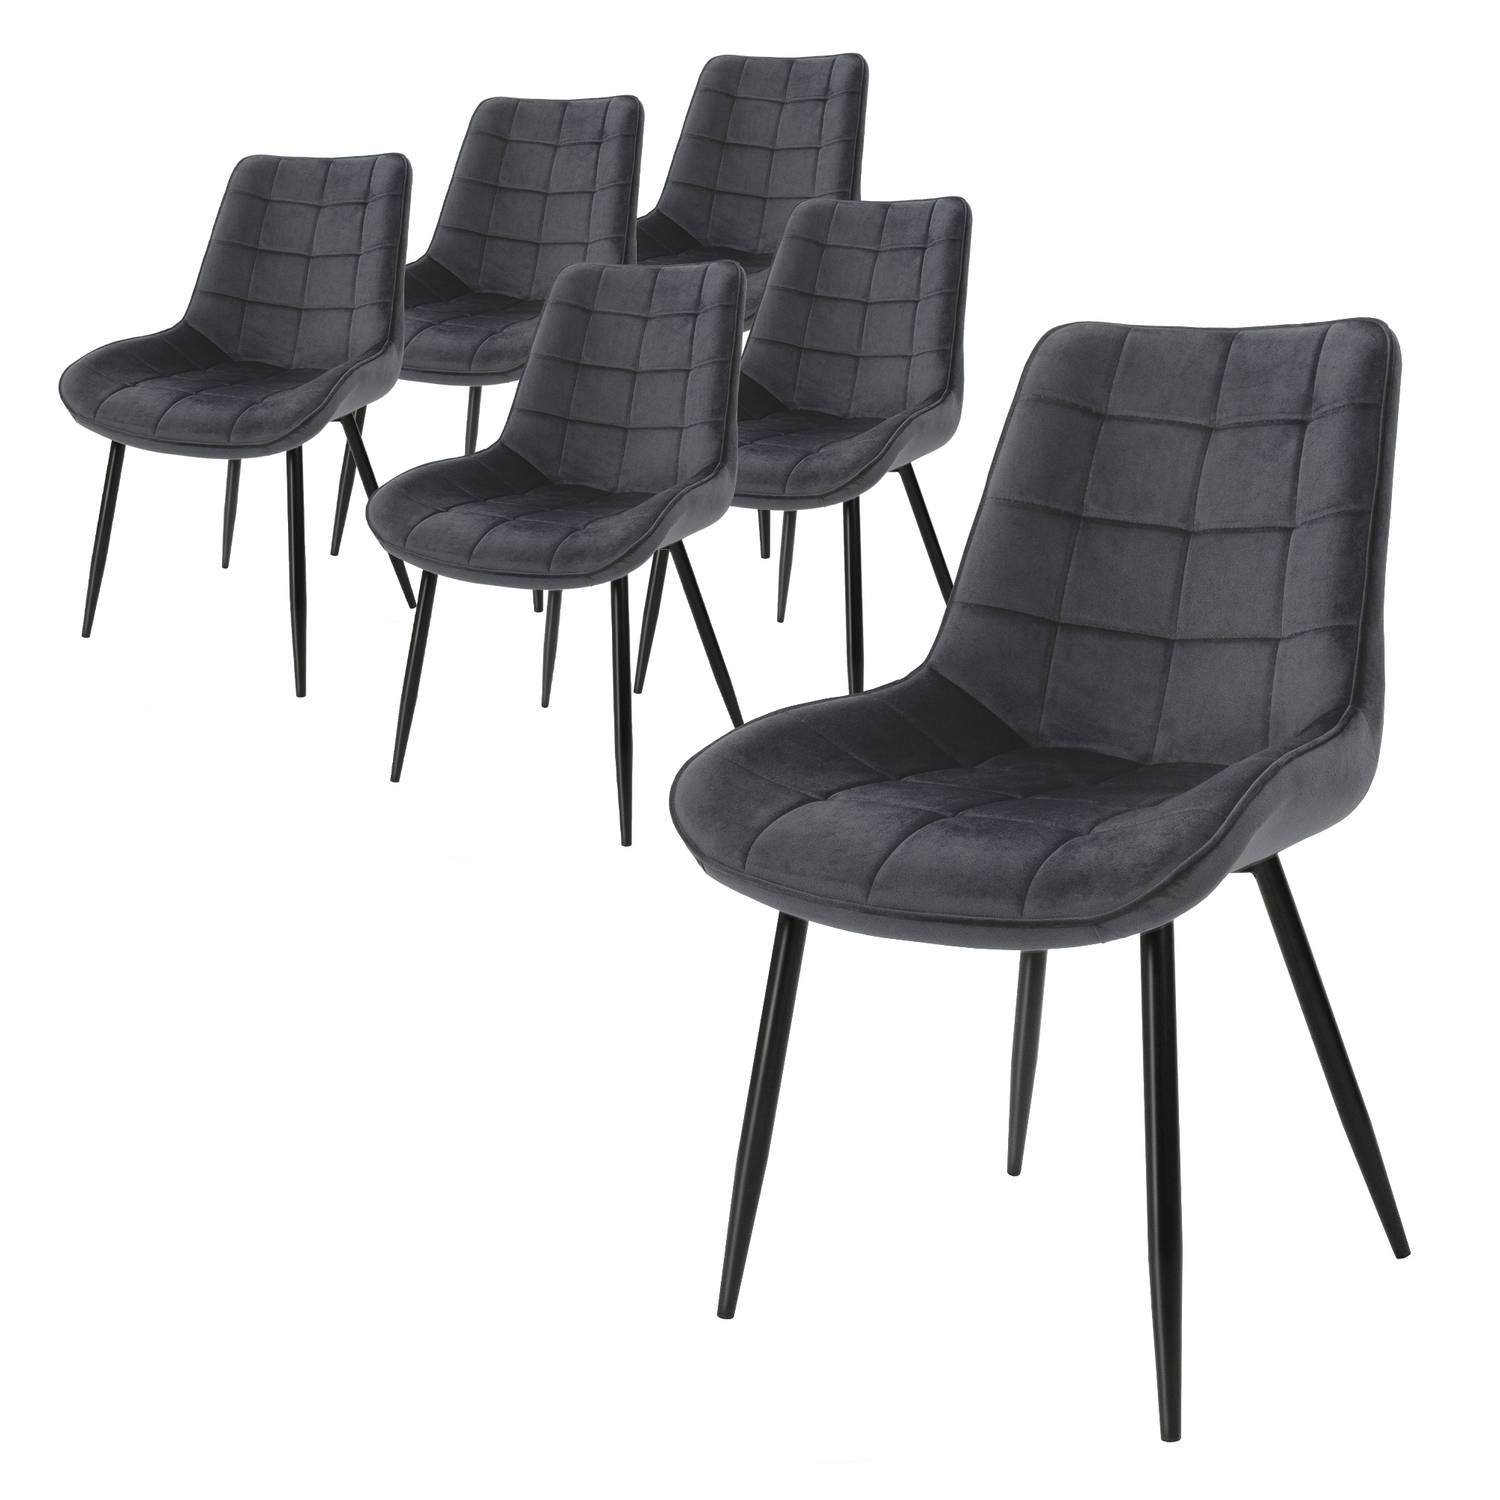 ML-Design set van 6 eetkamerstoelen met rugleuning, antraciet, keukenstoel met fluwelen bekleding, gestoffeerde stoel met metalen poten, ergonomische stoel voor eettafel, woonkamer